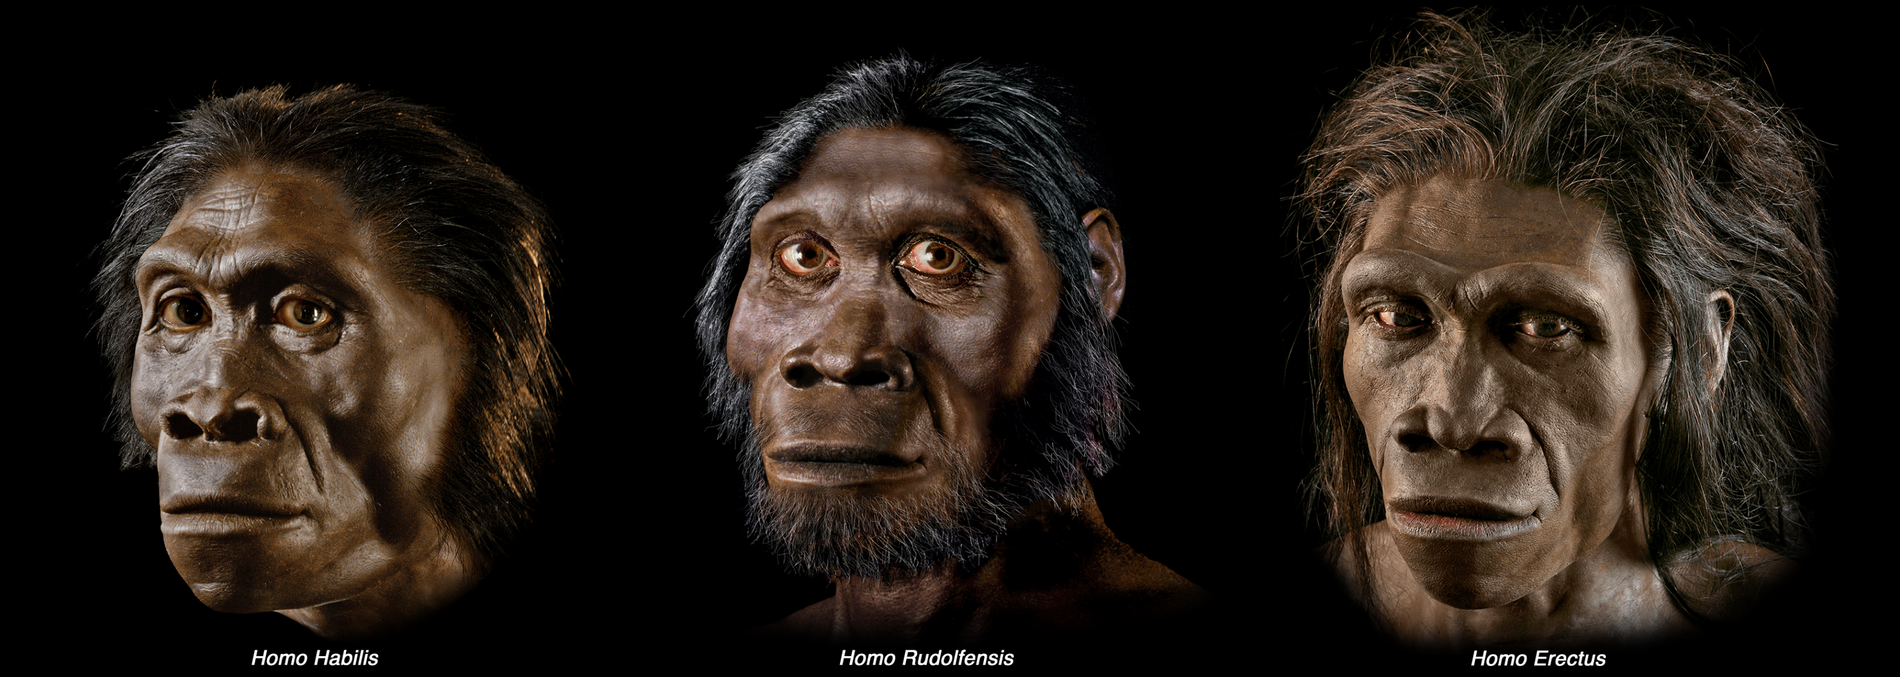 Evolución, nuevas teorías sobre el origen humano